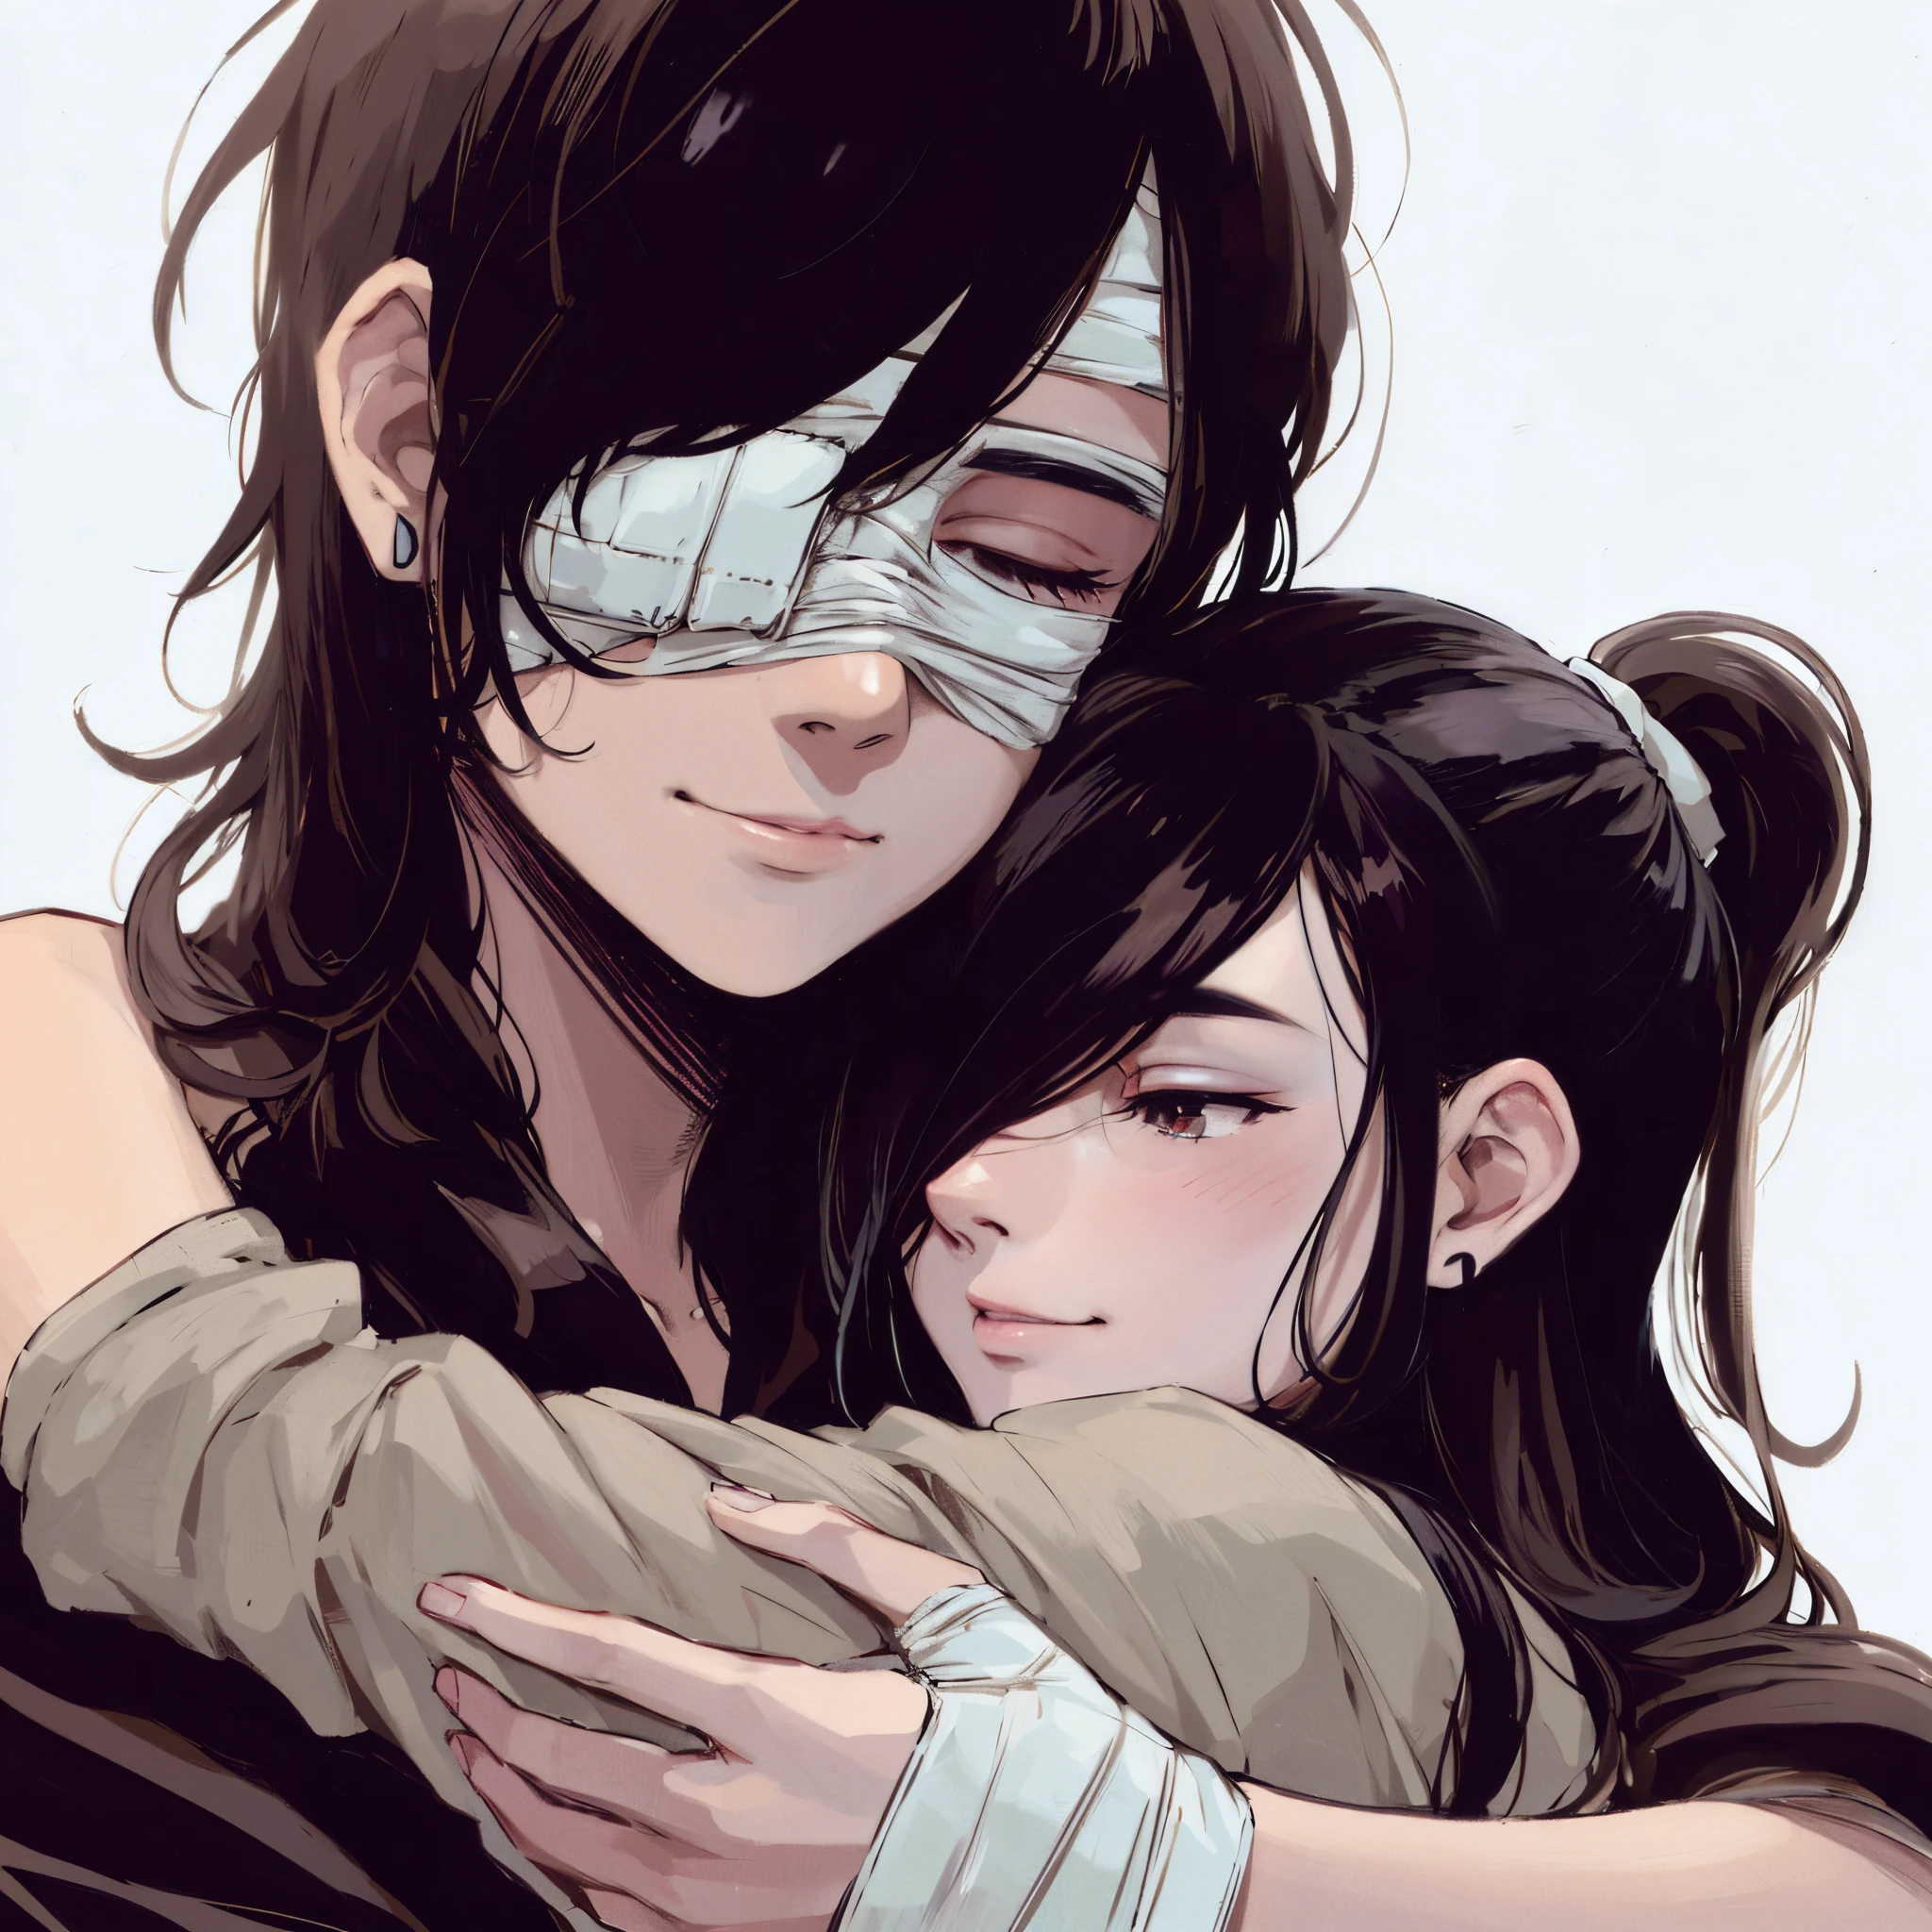 Bild im Anime-Stil von einem Paar, das sich umarmt